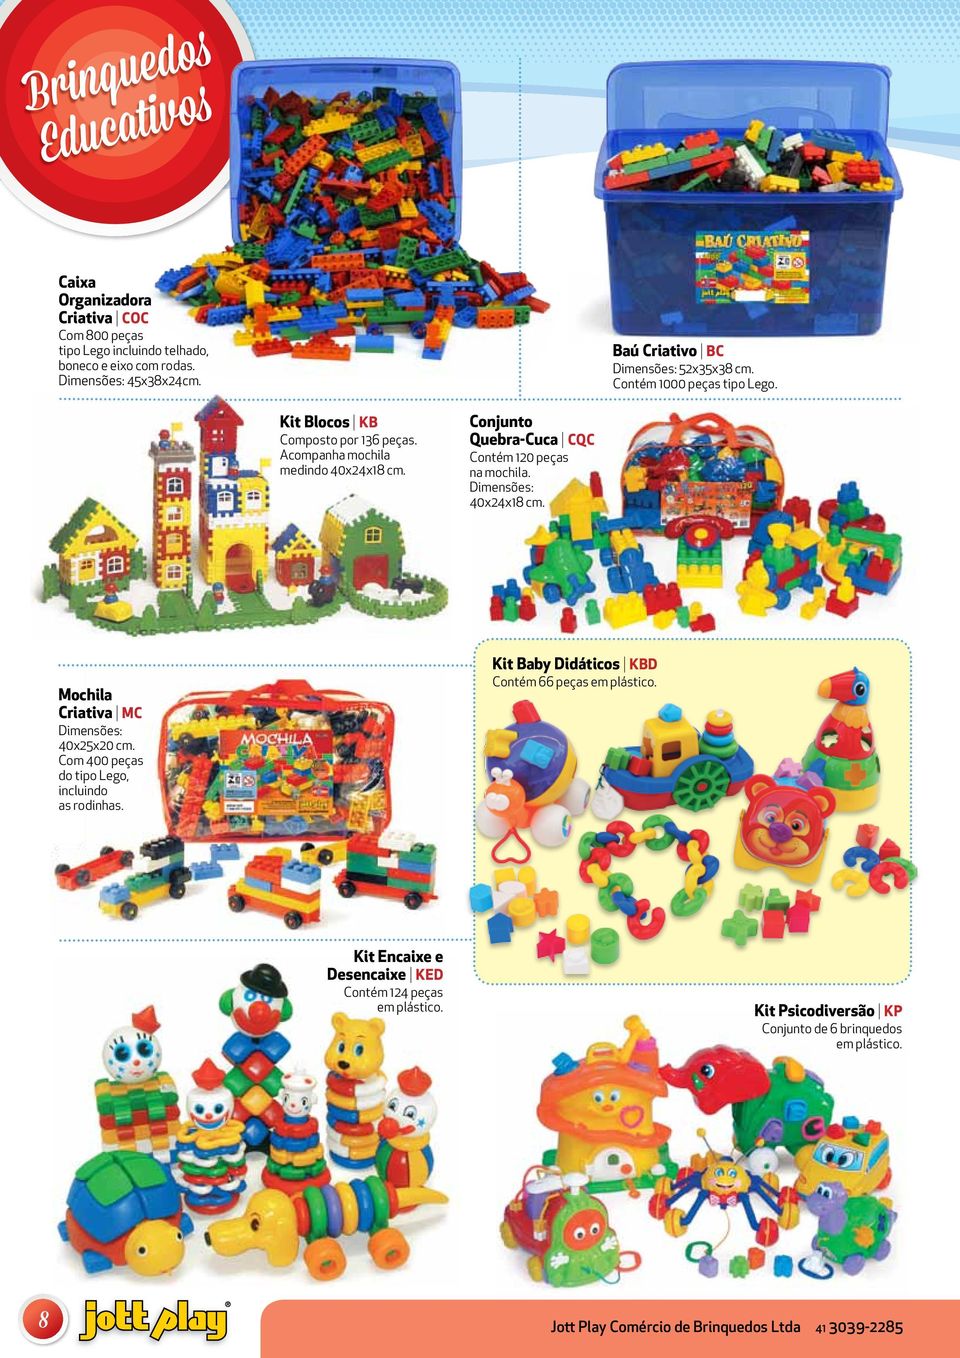 Conjunto Quebra-Cuca CQC Contém 120 peças na. 40x24x18 cm. Mochila Criativa MC 40x25x20 cm. Com 400 peças do tipo Lego, incluindo as rodinhas.